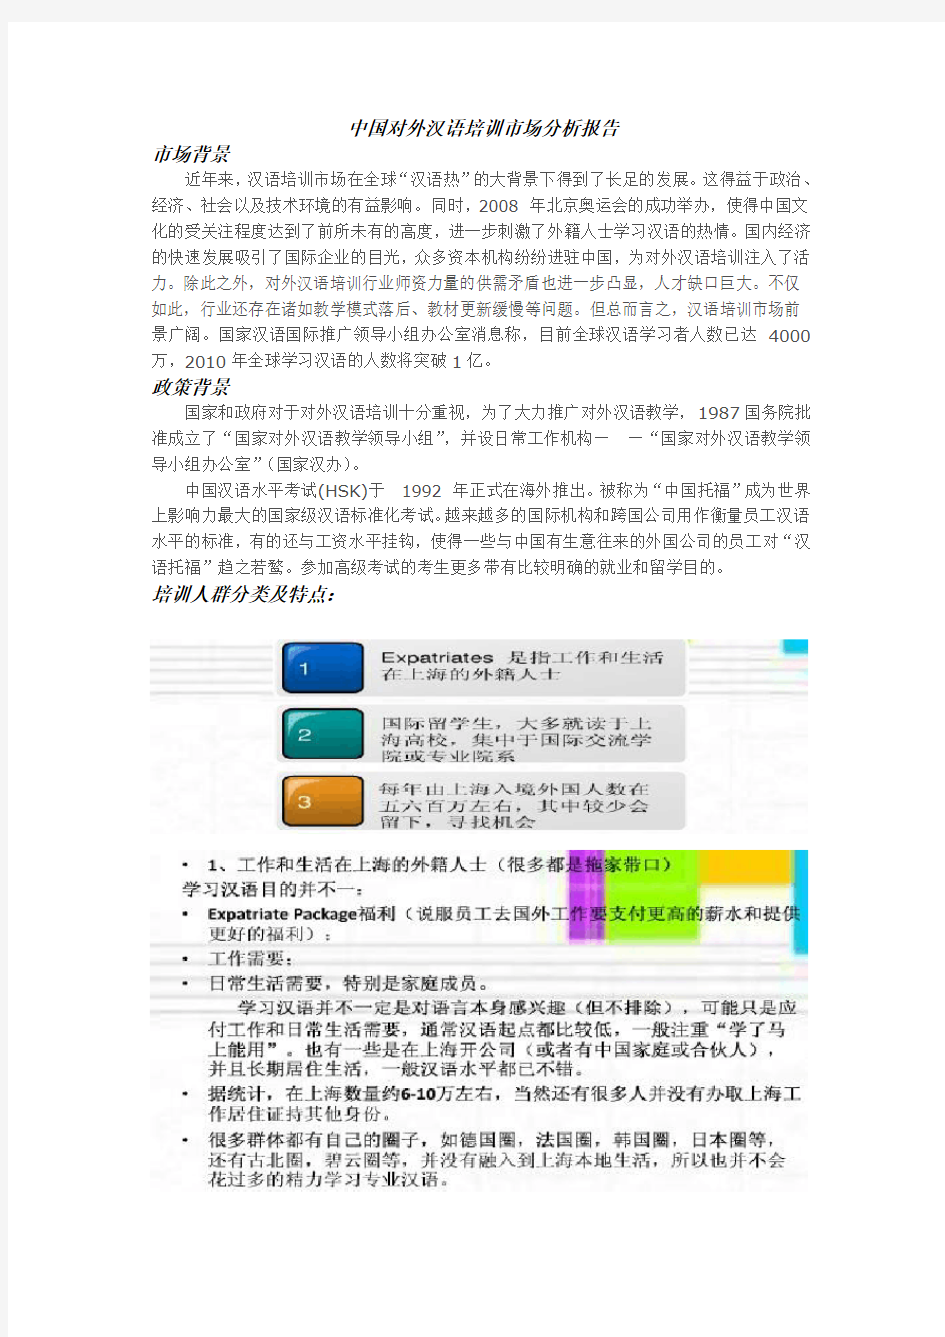 对外汉语教学市场分析报告(整合版)汇总